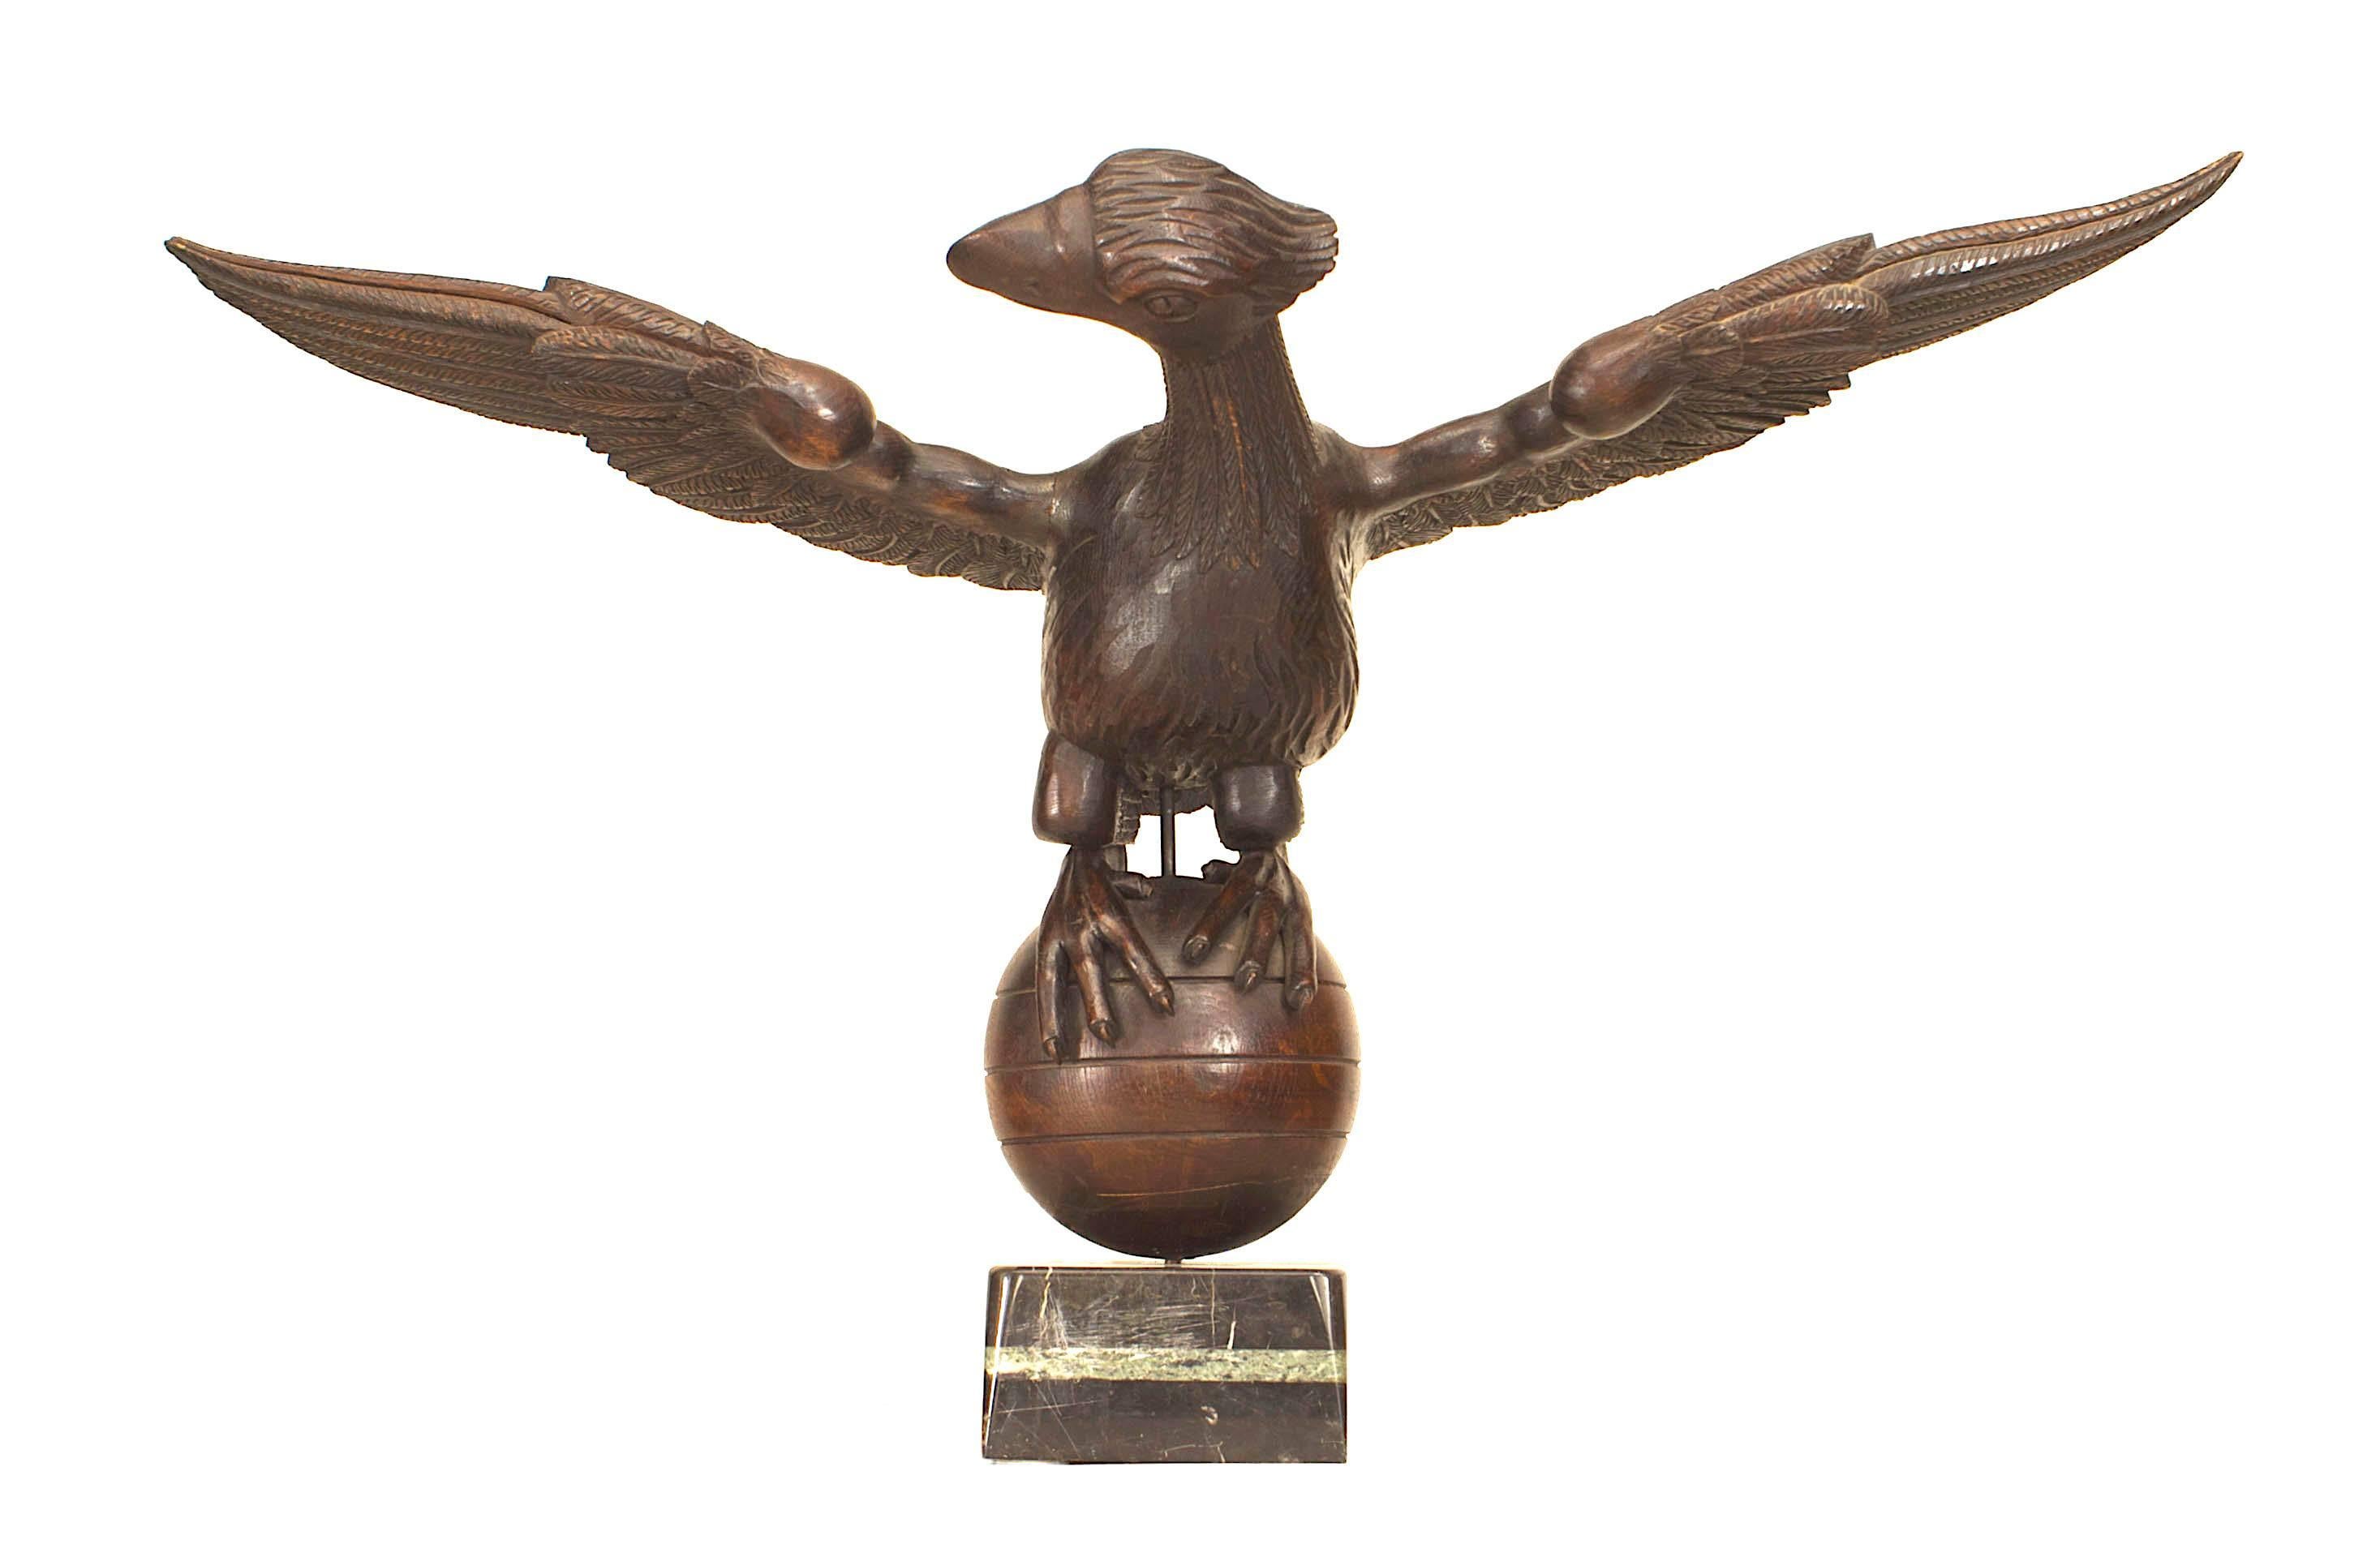 Französische (19. Jh., napoleonische Ära) volkstümlich geschnitzte Eichenholzfigur in Lebensgröße eines Adlers mit ausgebreiteten Flügeln, der auf einer runden Kugel mit Marmorsockel thront.
    